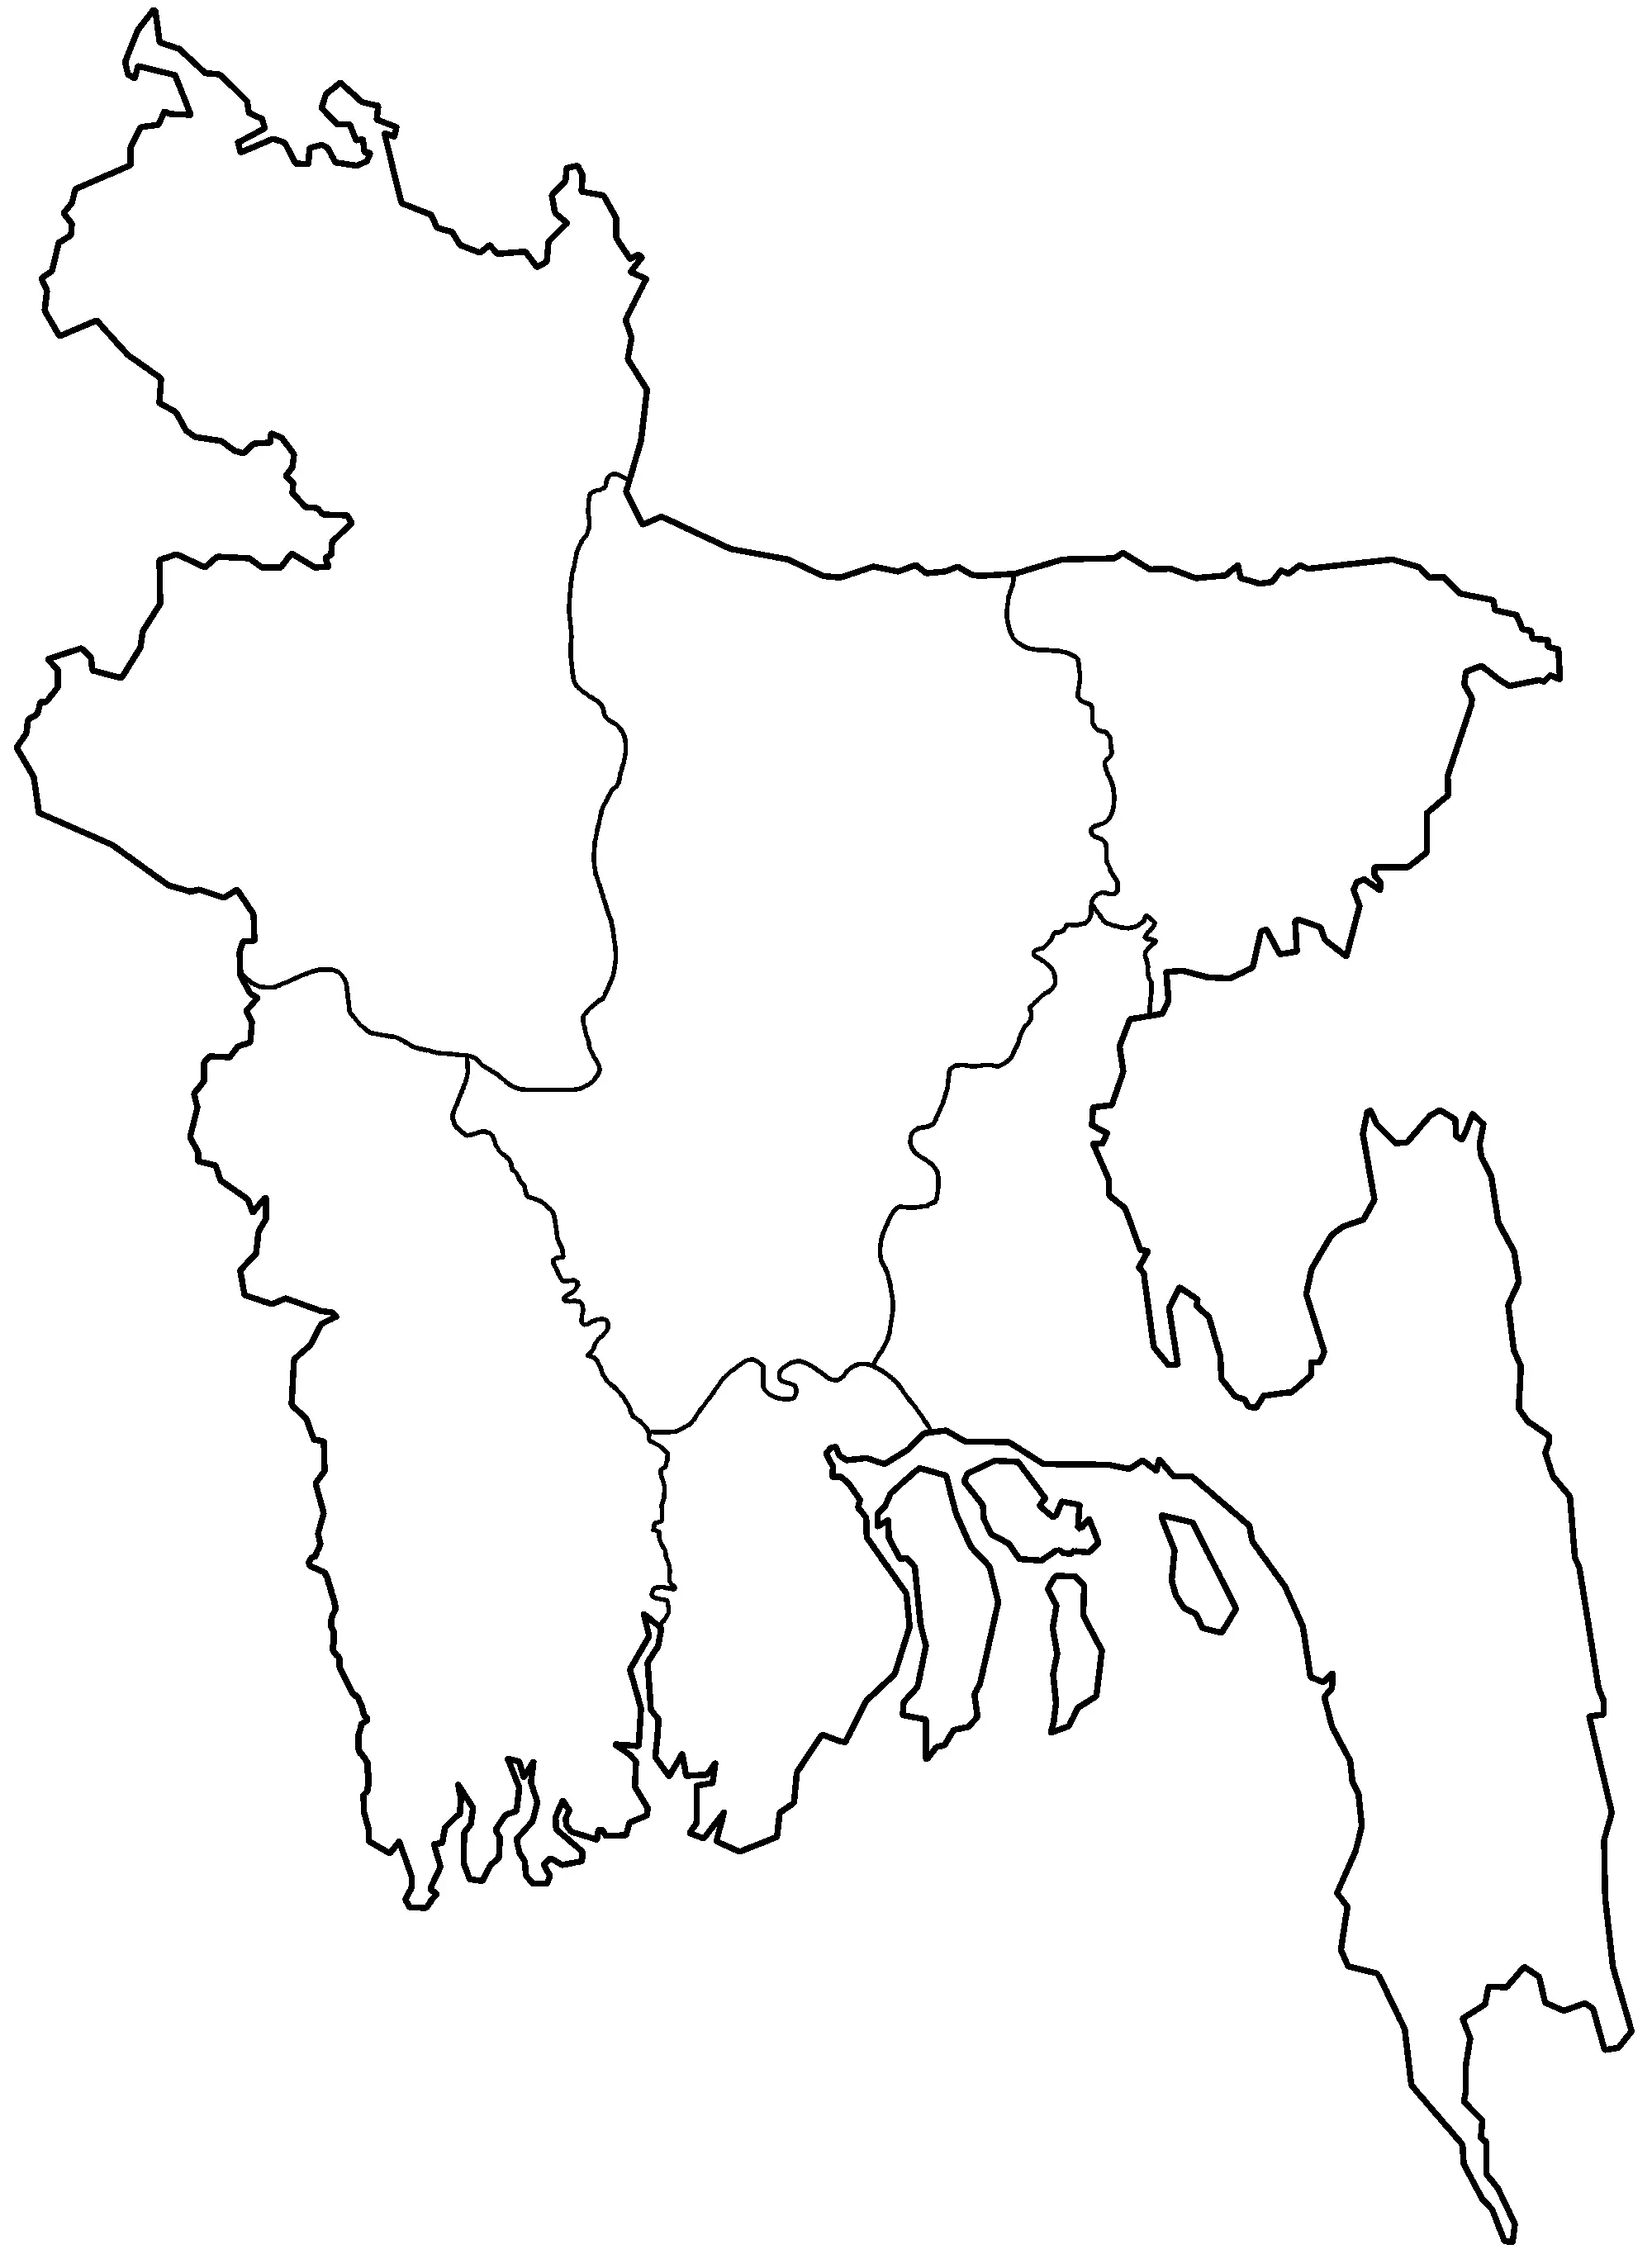 Bangladesh Divisions Blank